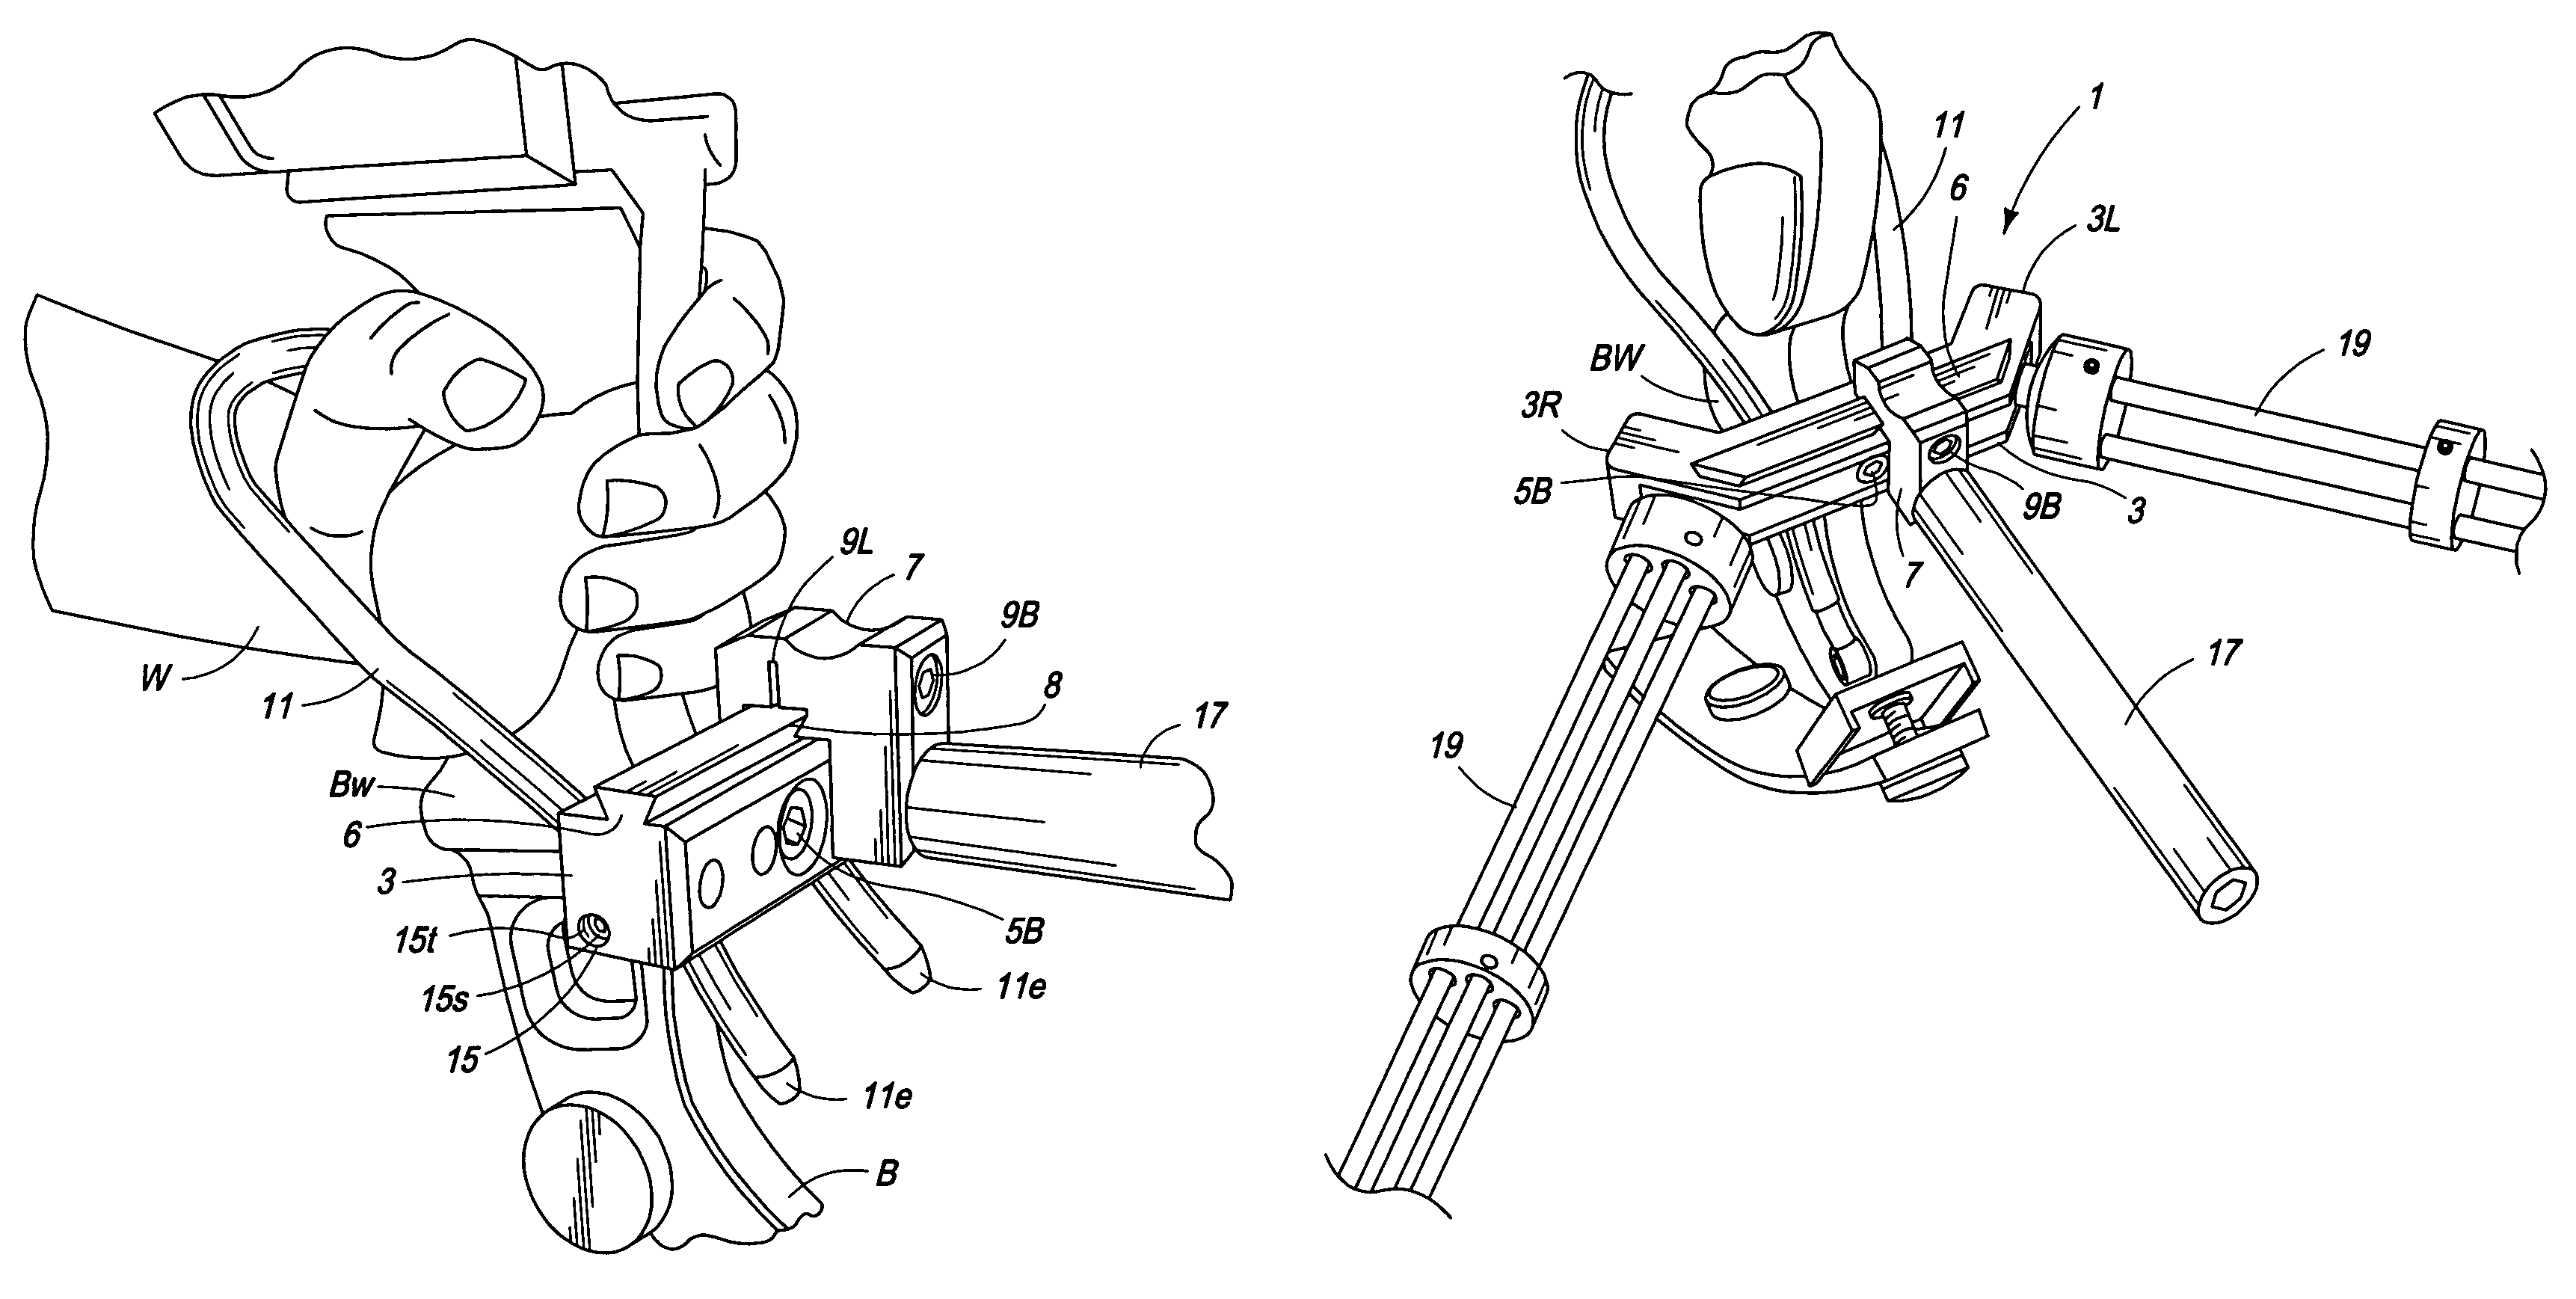 Archery bow stabilizer